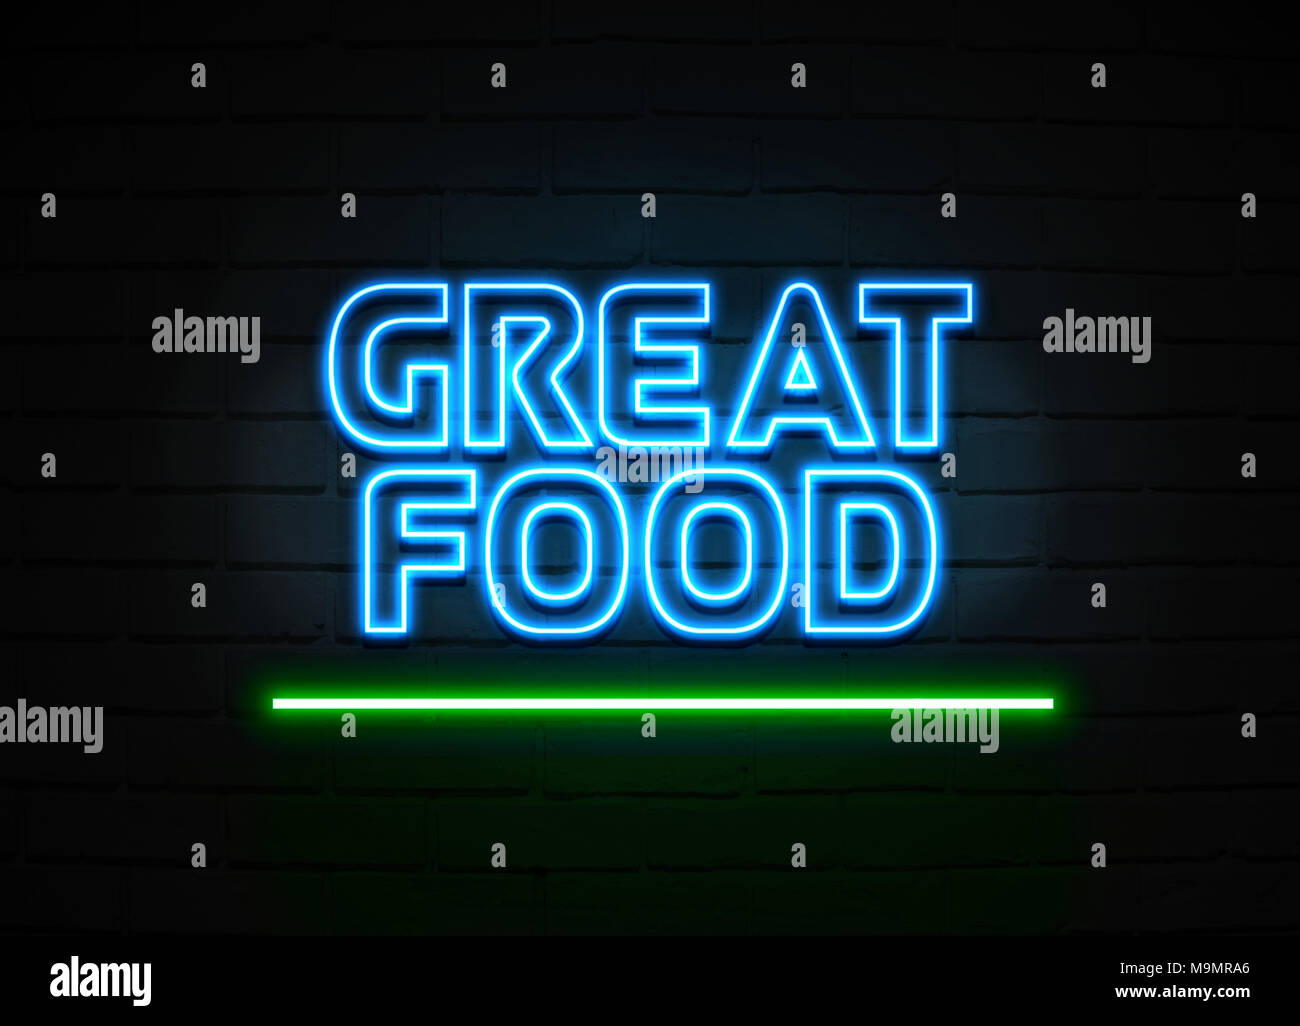 Tolles Essen Leuchtreklame - glühende Leuchtreklame auf brickwall Wand - 3D-Royalty Free Stock Illustration dargestellt. Stockfoto